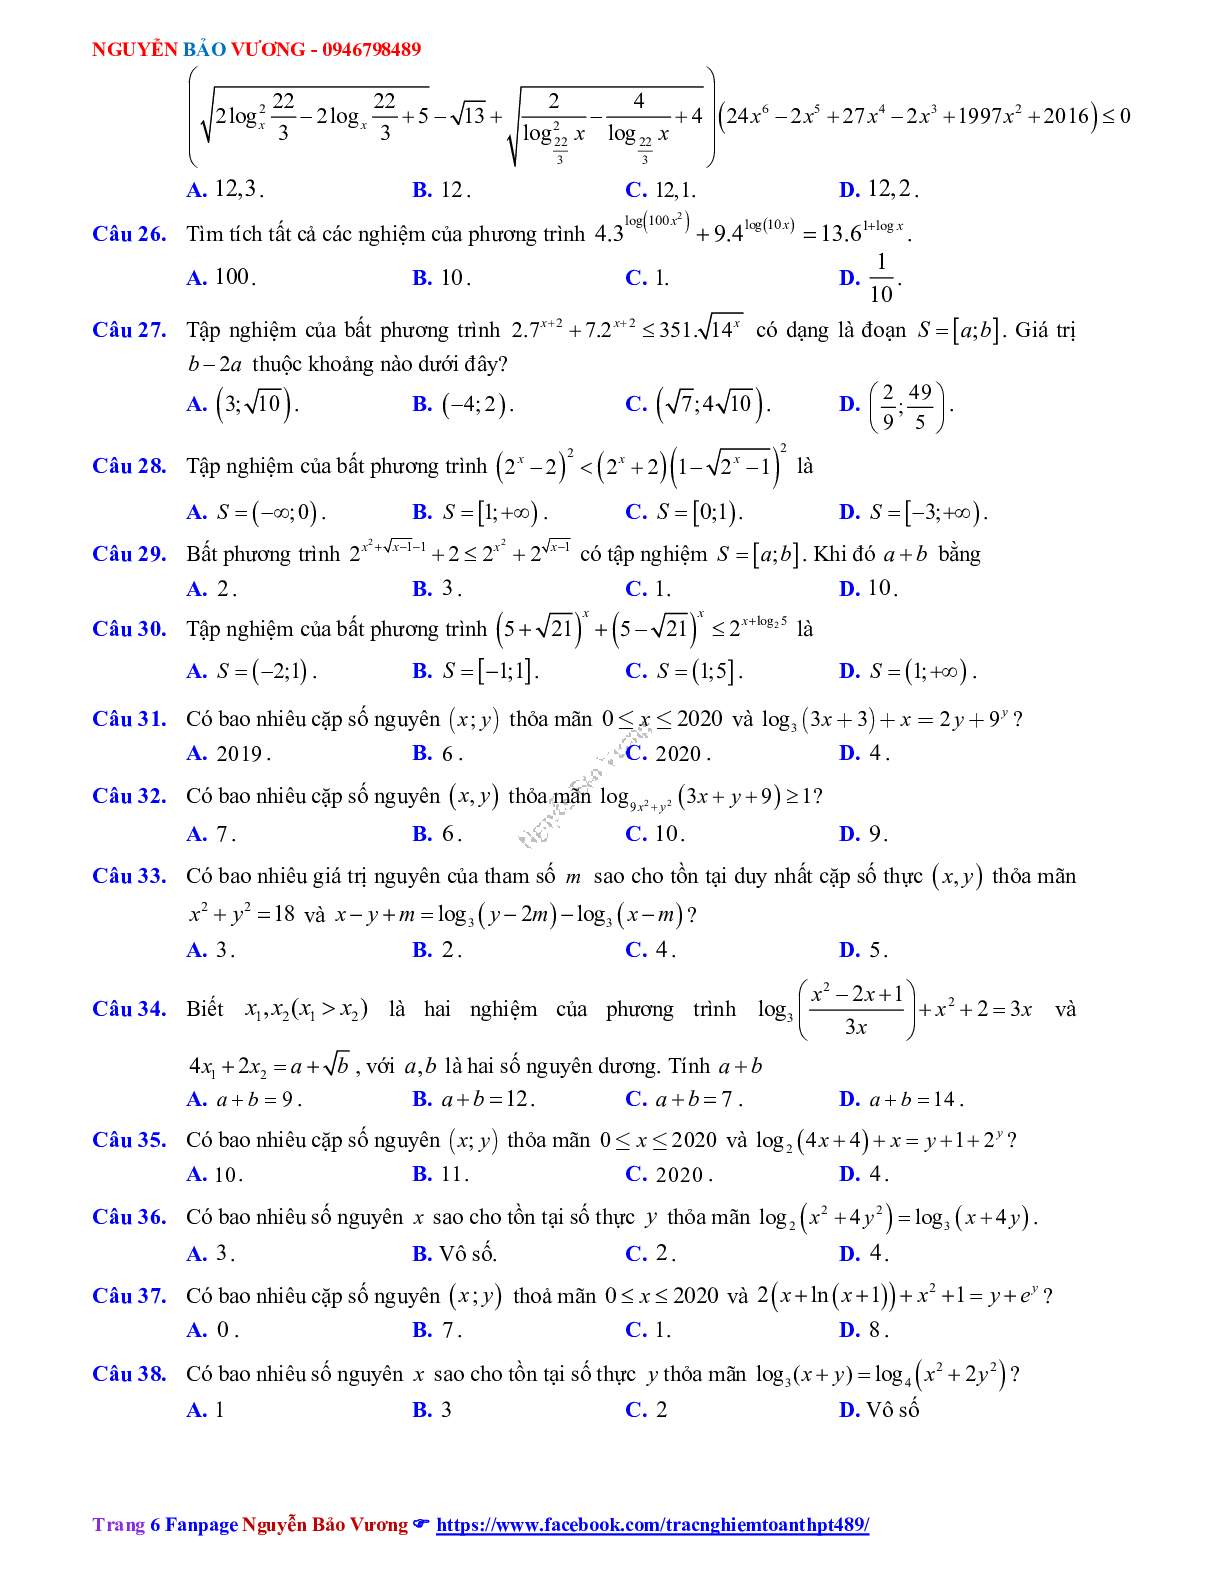 Phương pháp giải về Phương trình, bất phương trình mũ và logarit 2023 (lý thuyết và bài tập) (trang 6)